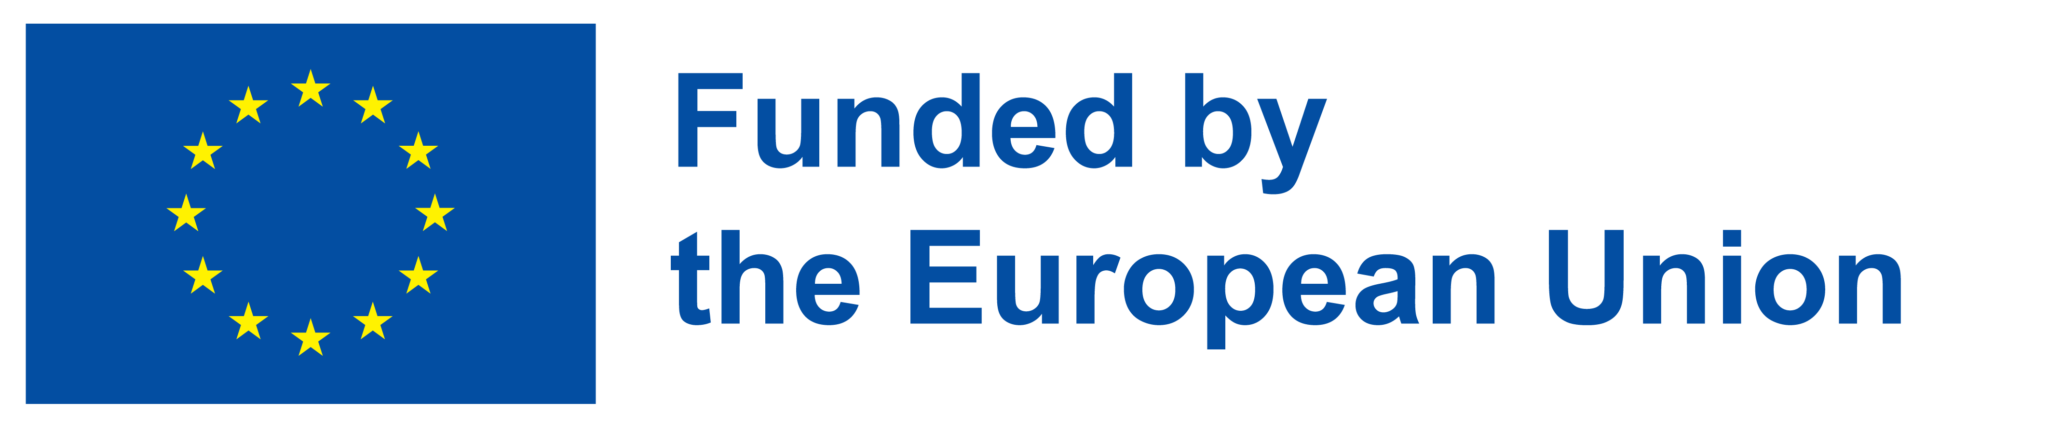 Logotipo financiación de la Unión Europea